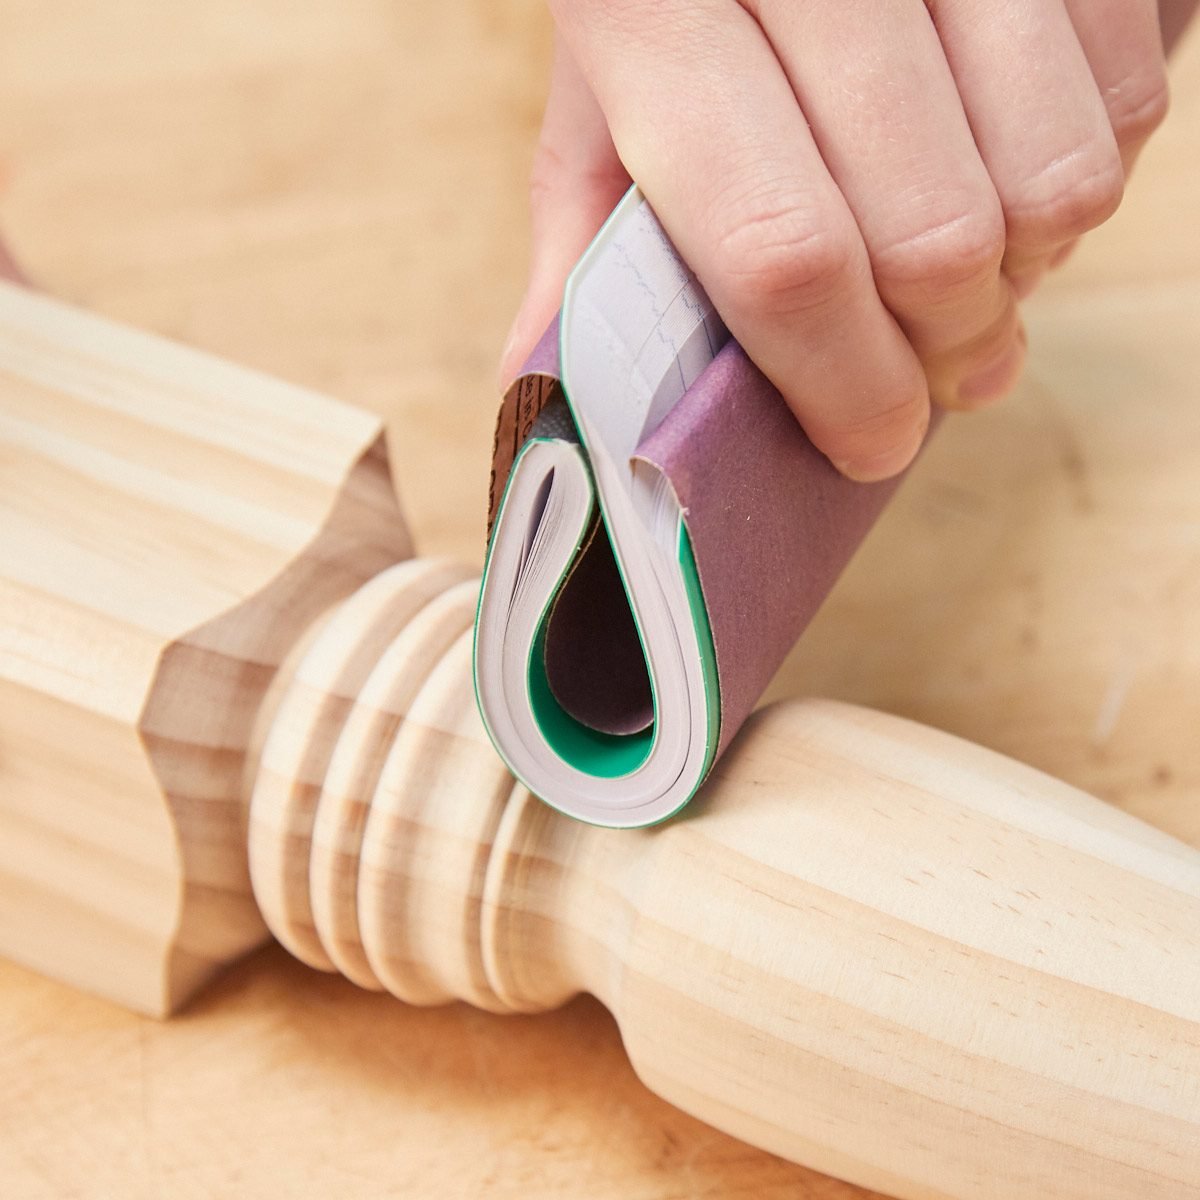 Resin Polishing Kit Polish Strips Blocks Sandpaper Scissors Wooden